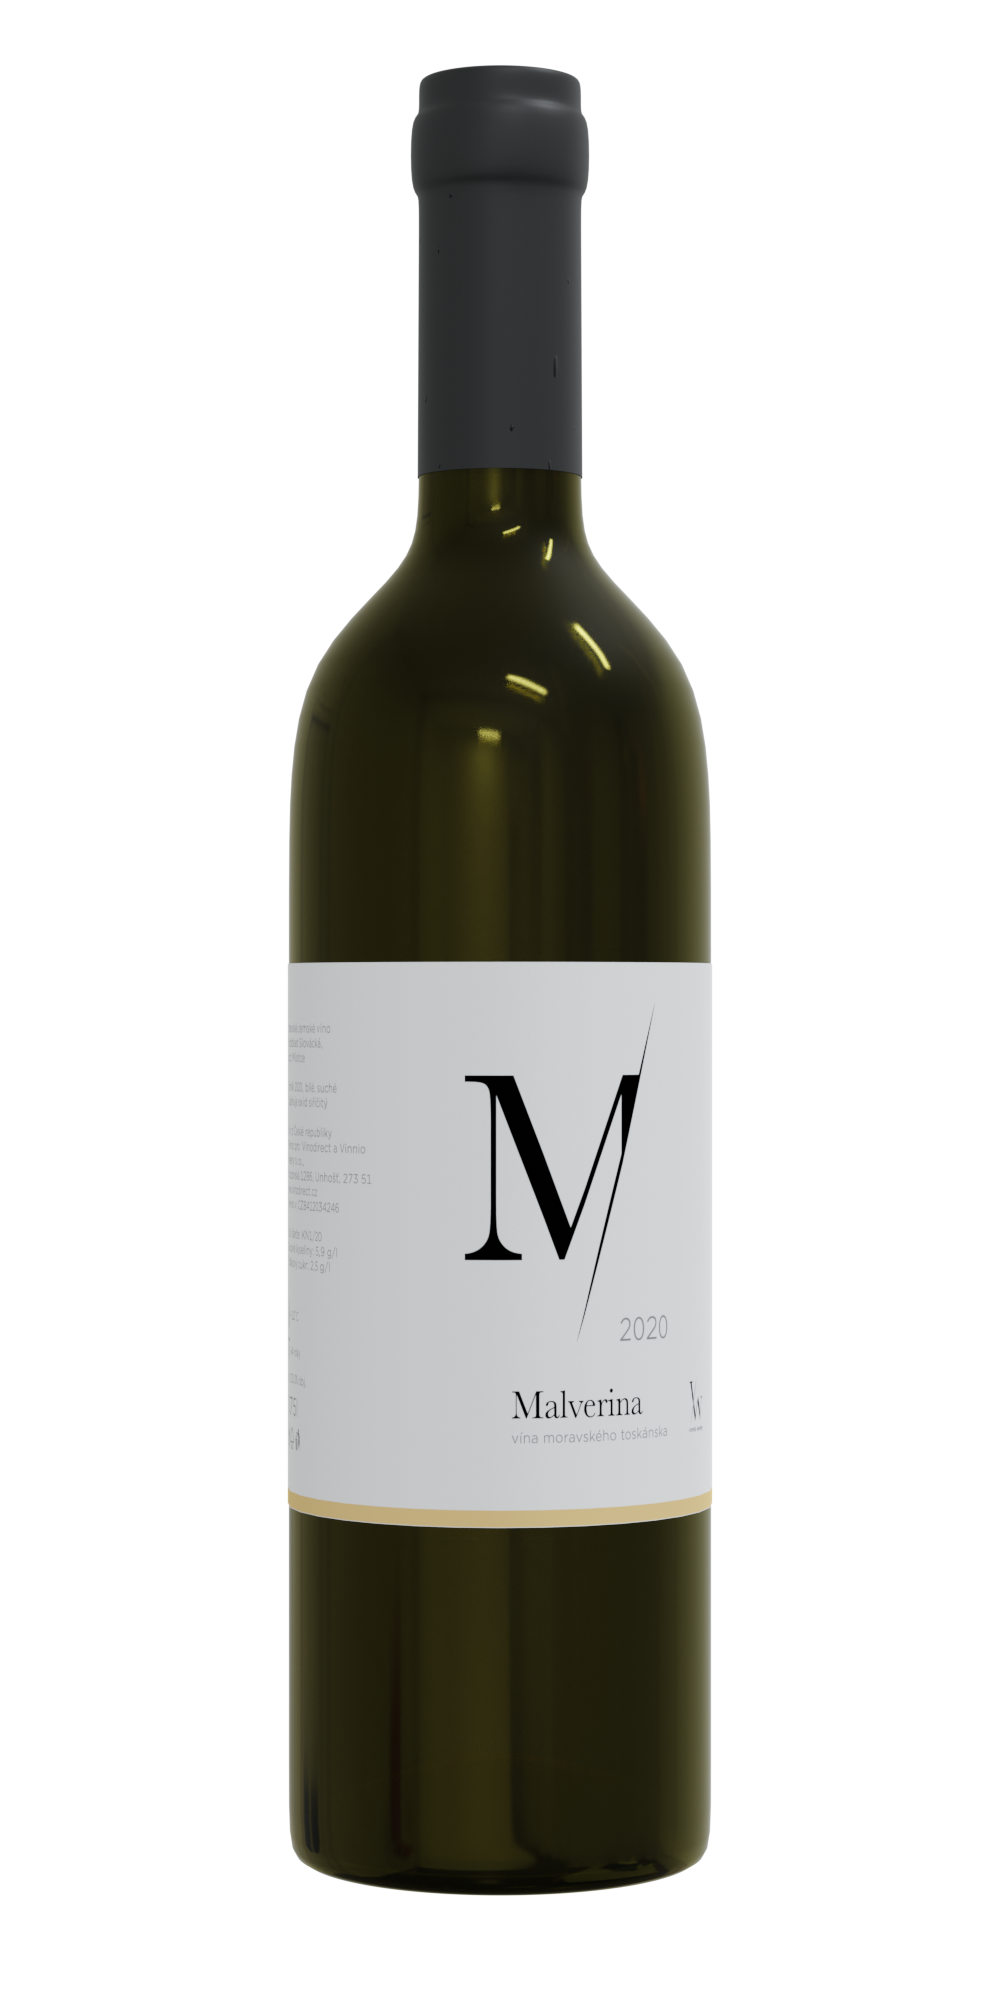 Vinnio Winery - Malverina 2020